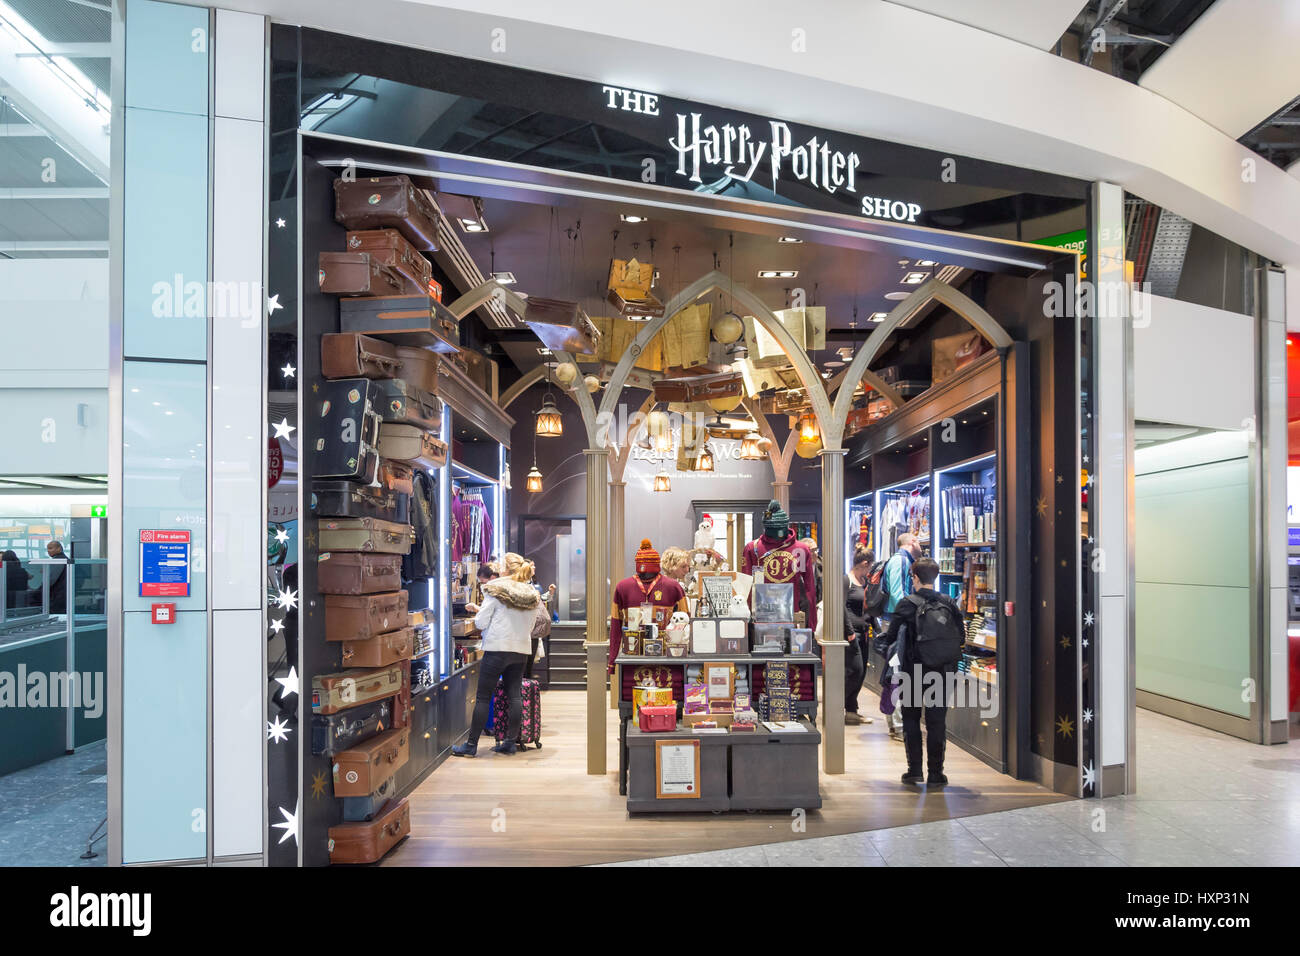 Palos de escoba fuera de la tienda Harry Potter, york Fotografía de stock -  Alamy